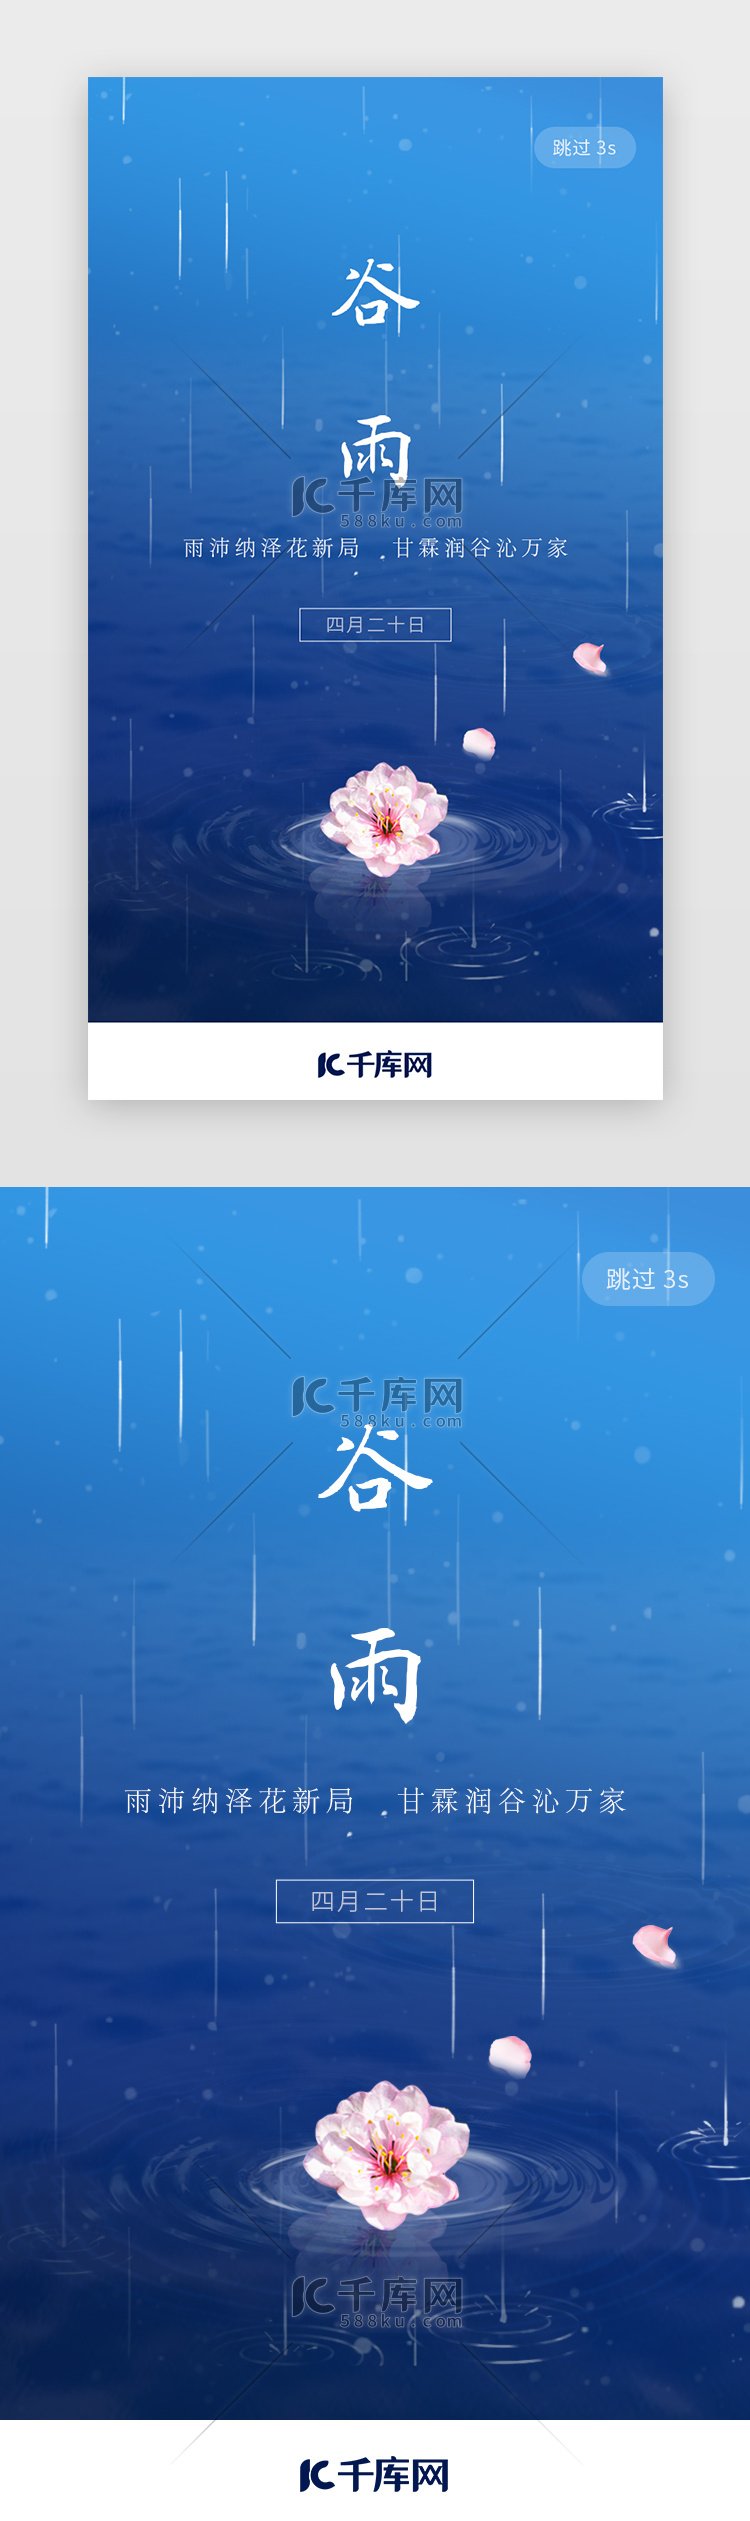 二十四节气谷雨app闪屏